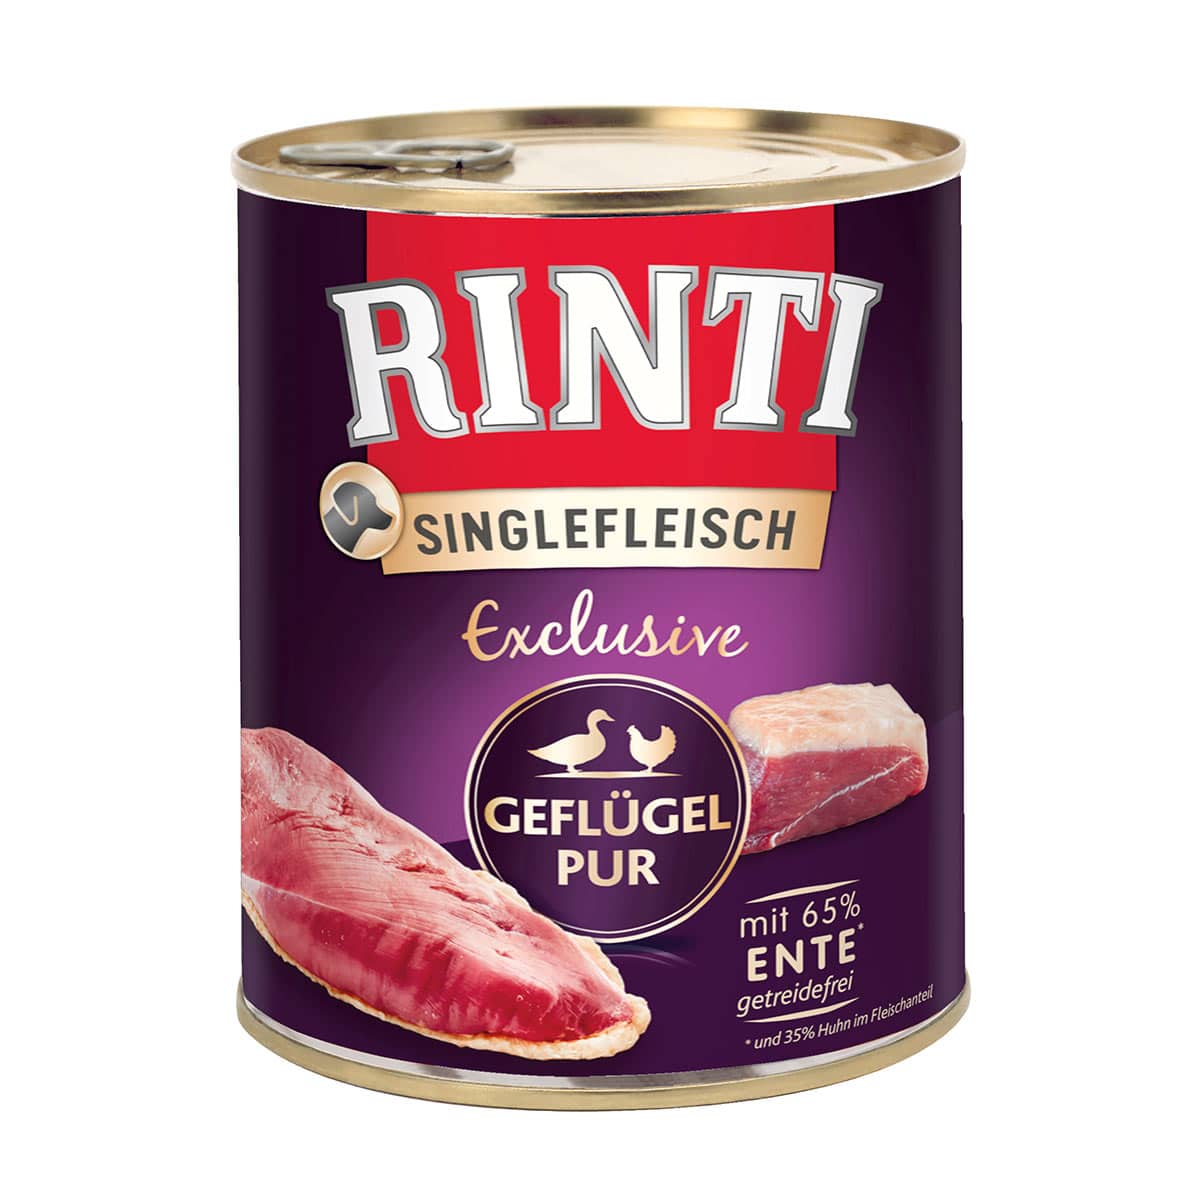 Rinti Singlefleisch Exclusive Geflügel pur 12x800g